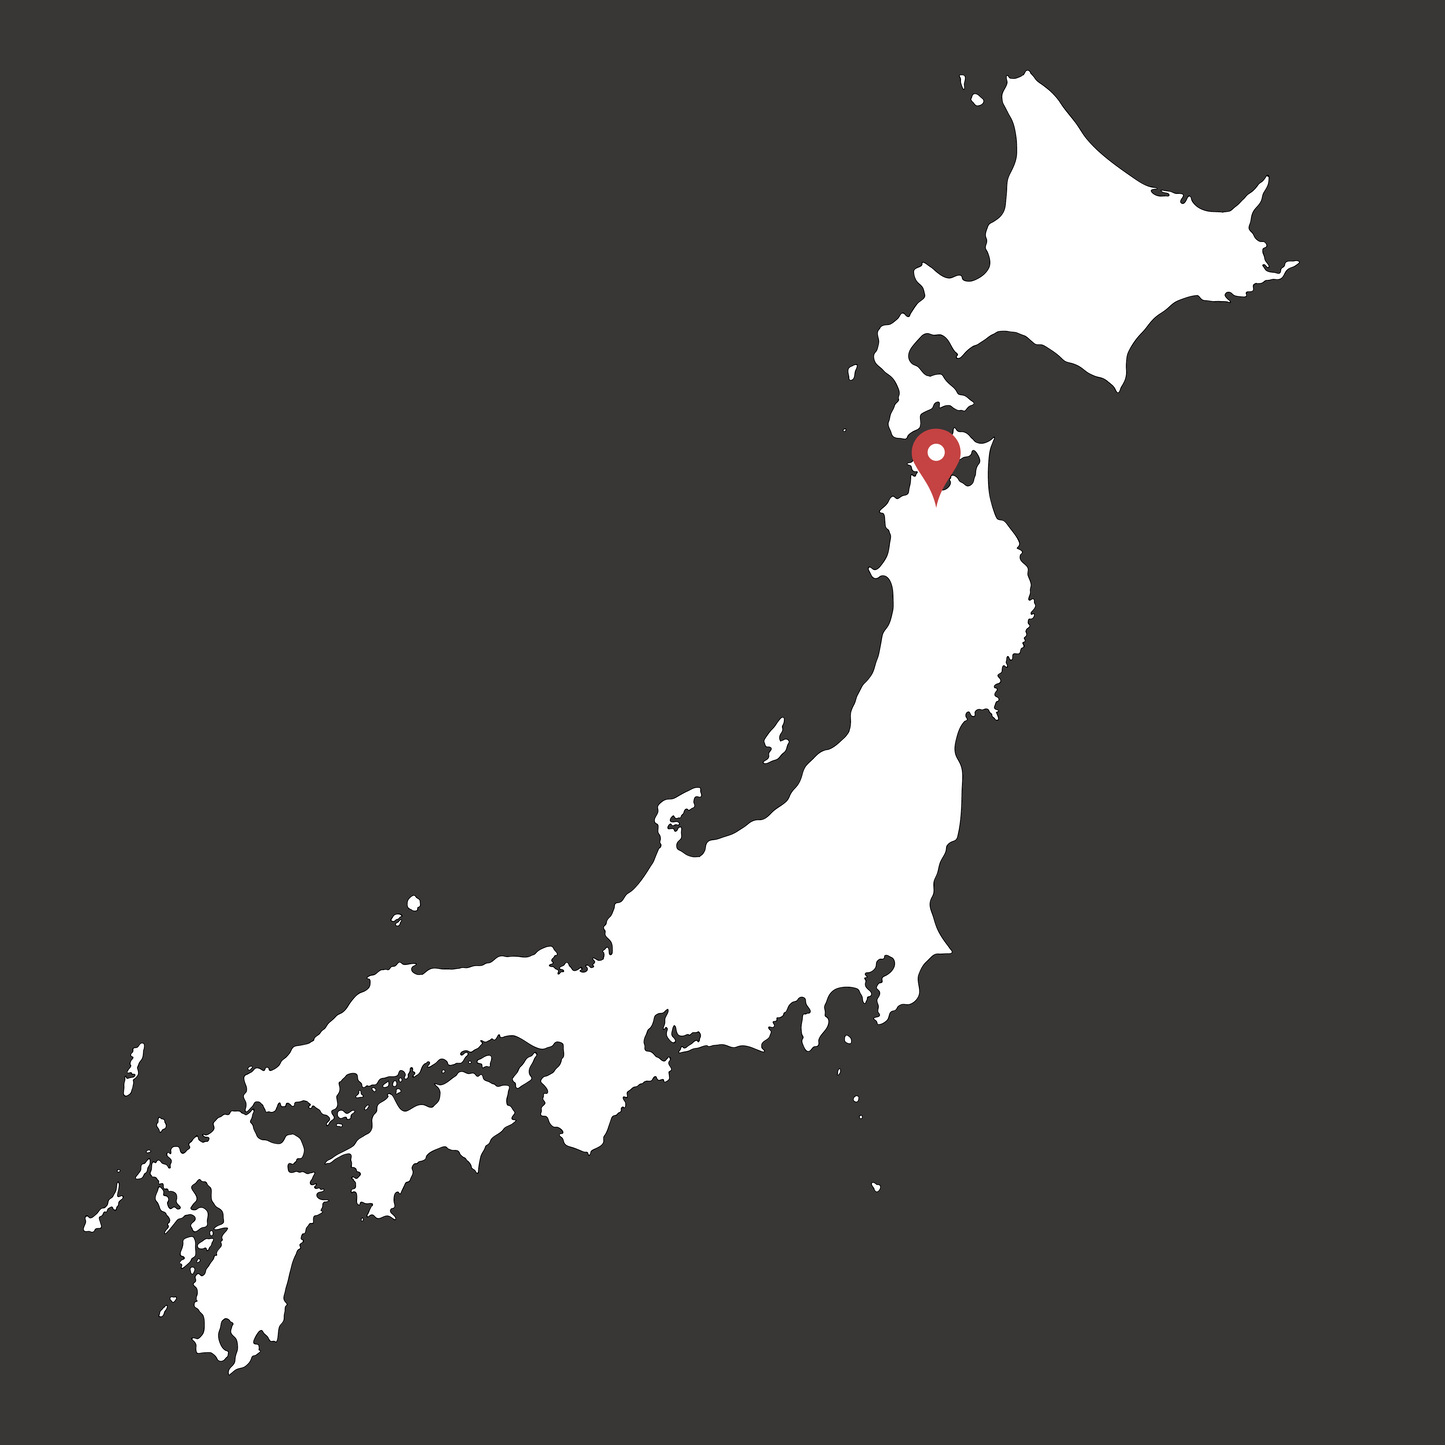 Une kokeshi évoquant l'ère Shōwa.